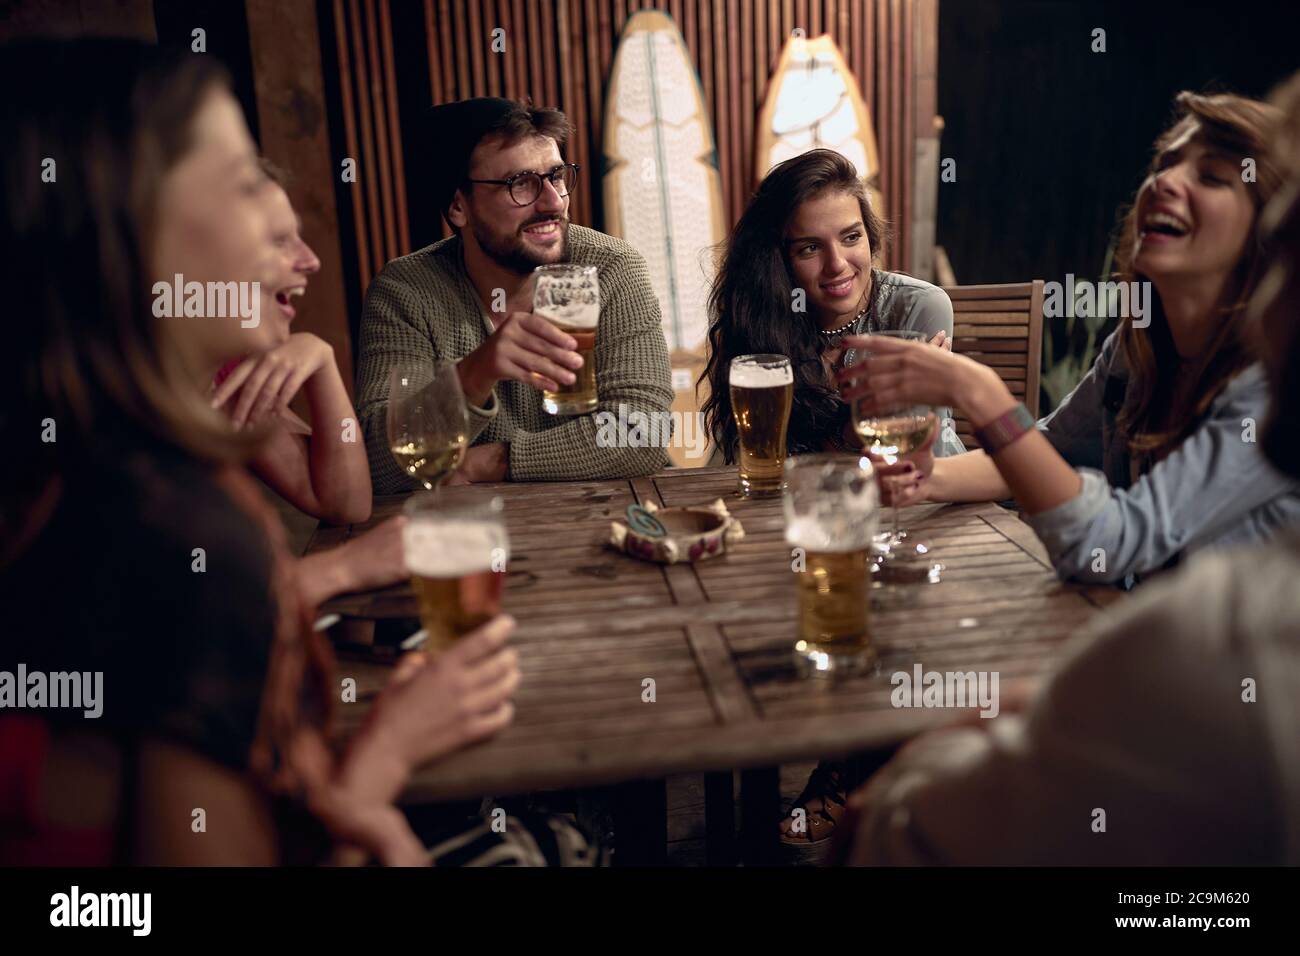 Freunde, die Spaß auf einer Party im Freien haben. Glückliche Menschen genießen Getränke zusammen. Stockfoto